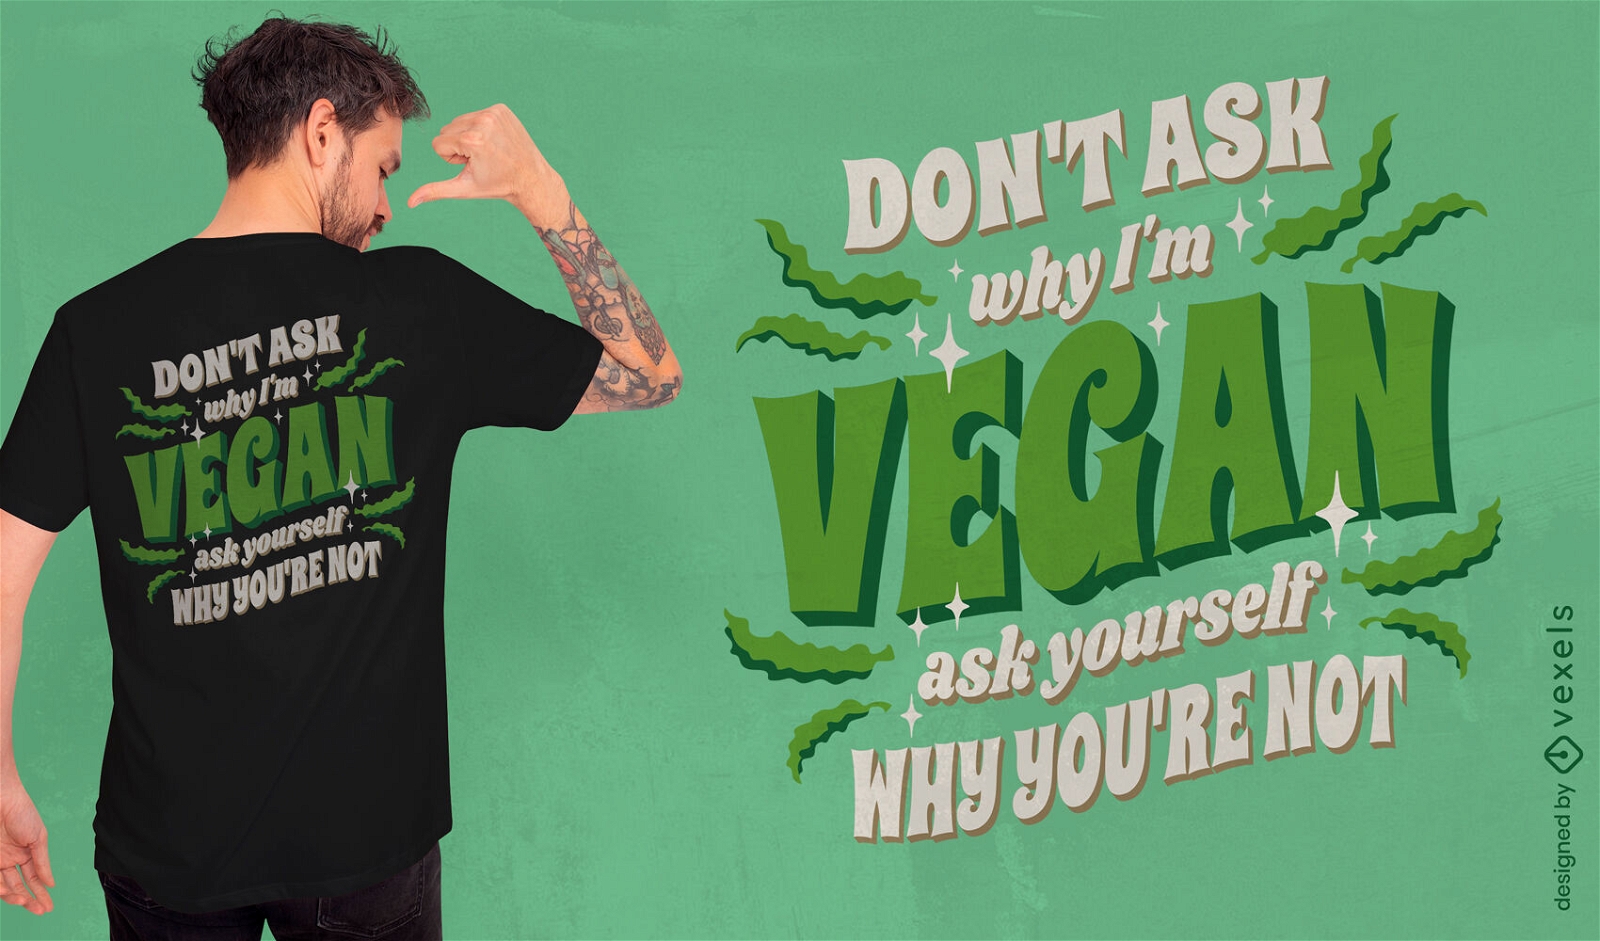 Dise?o de camiseta de cita vegana motivacional